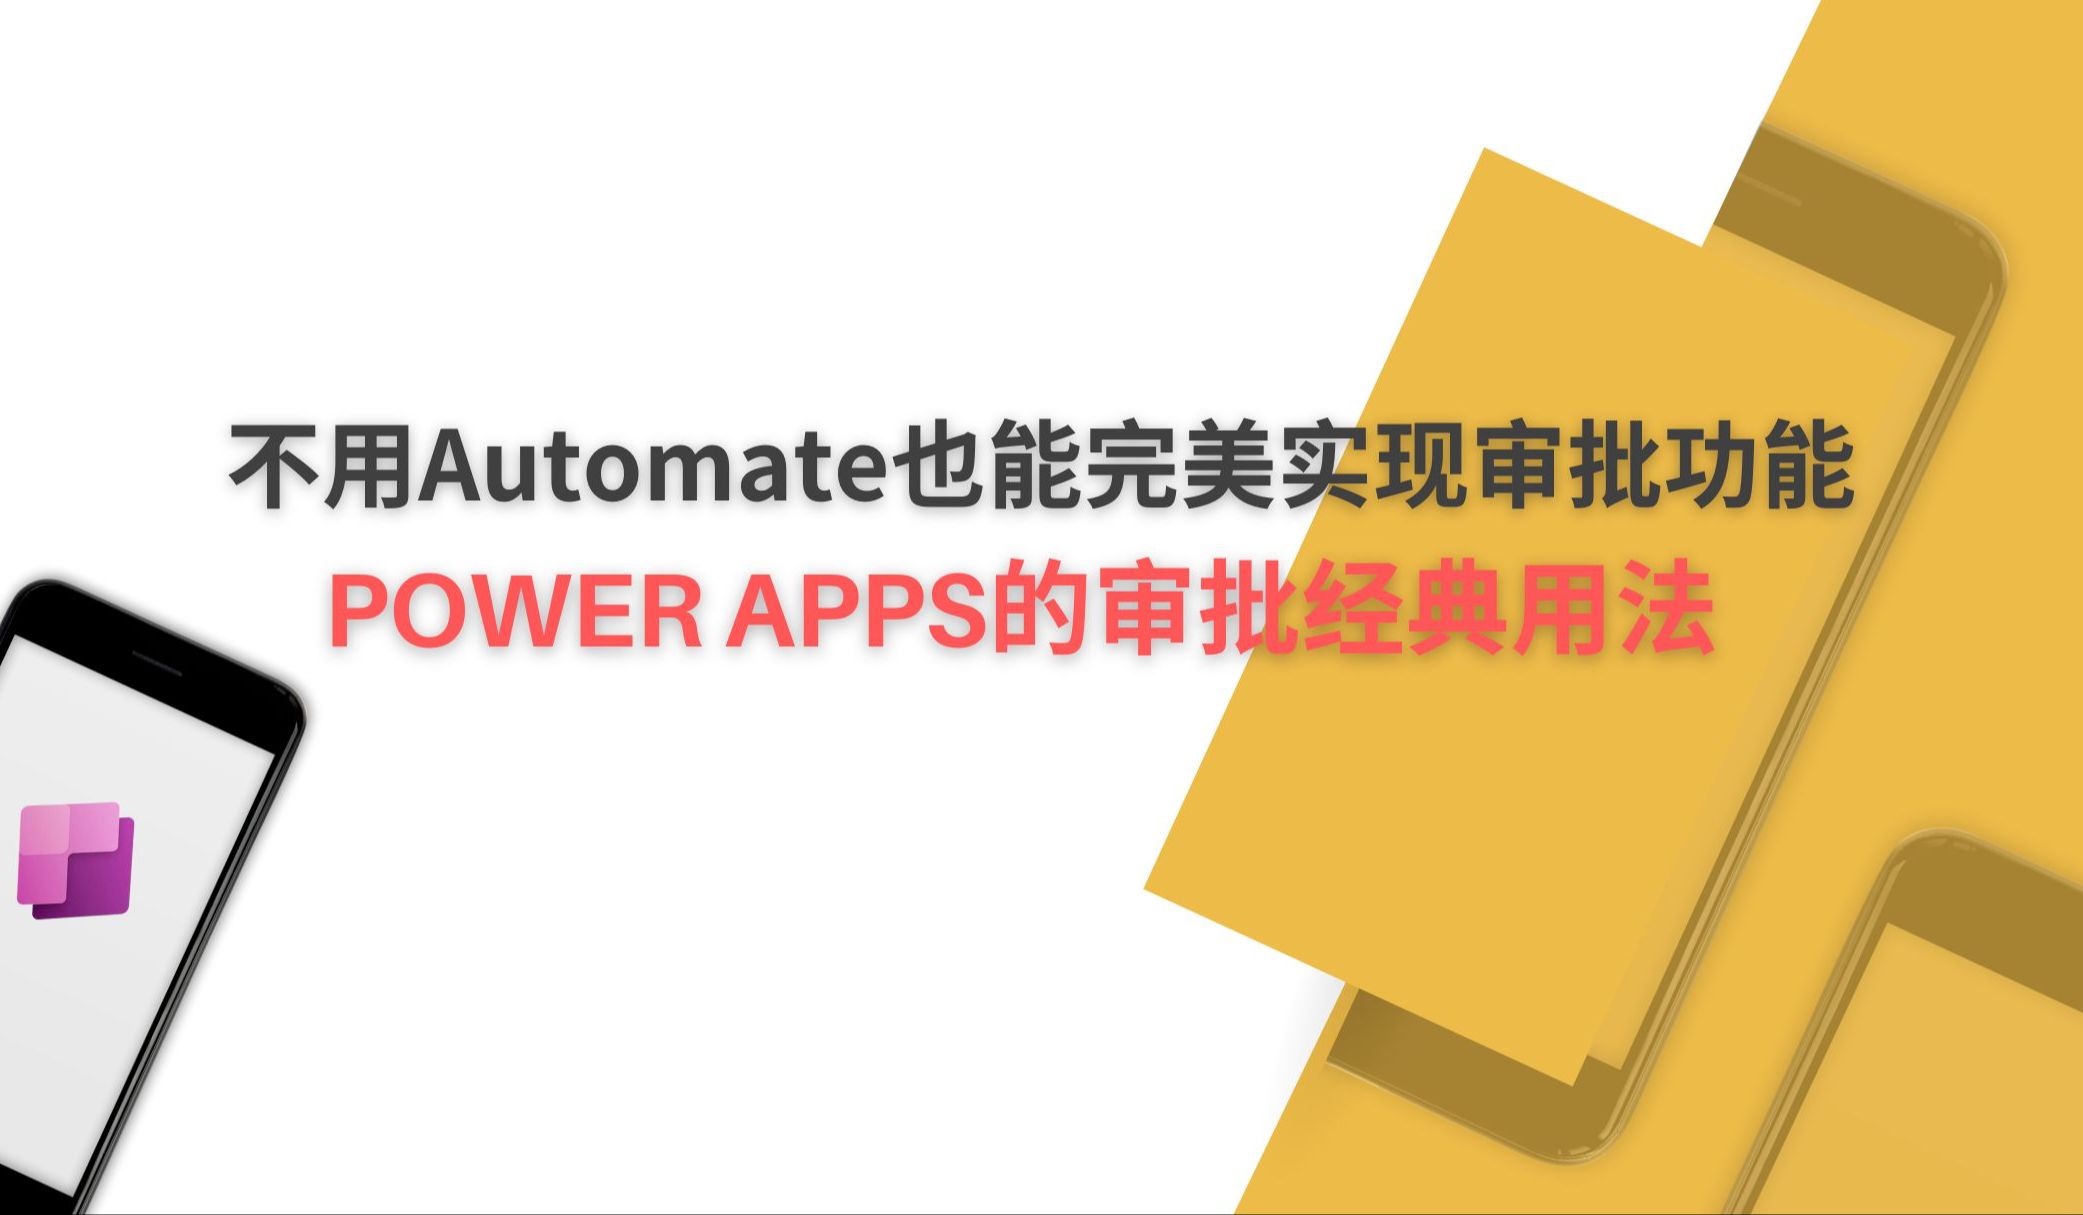 【Power Apps实例】 不用Automate也能完美实现审批功能